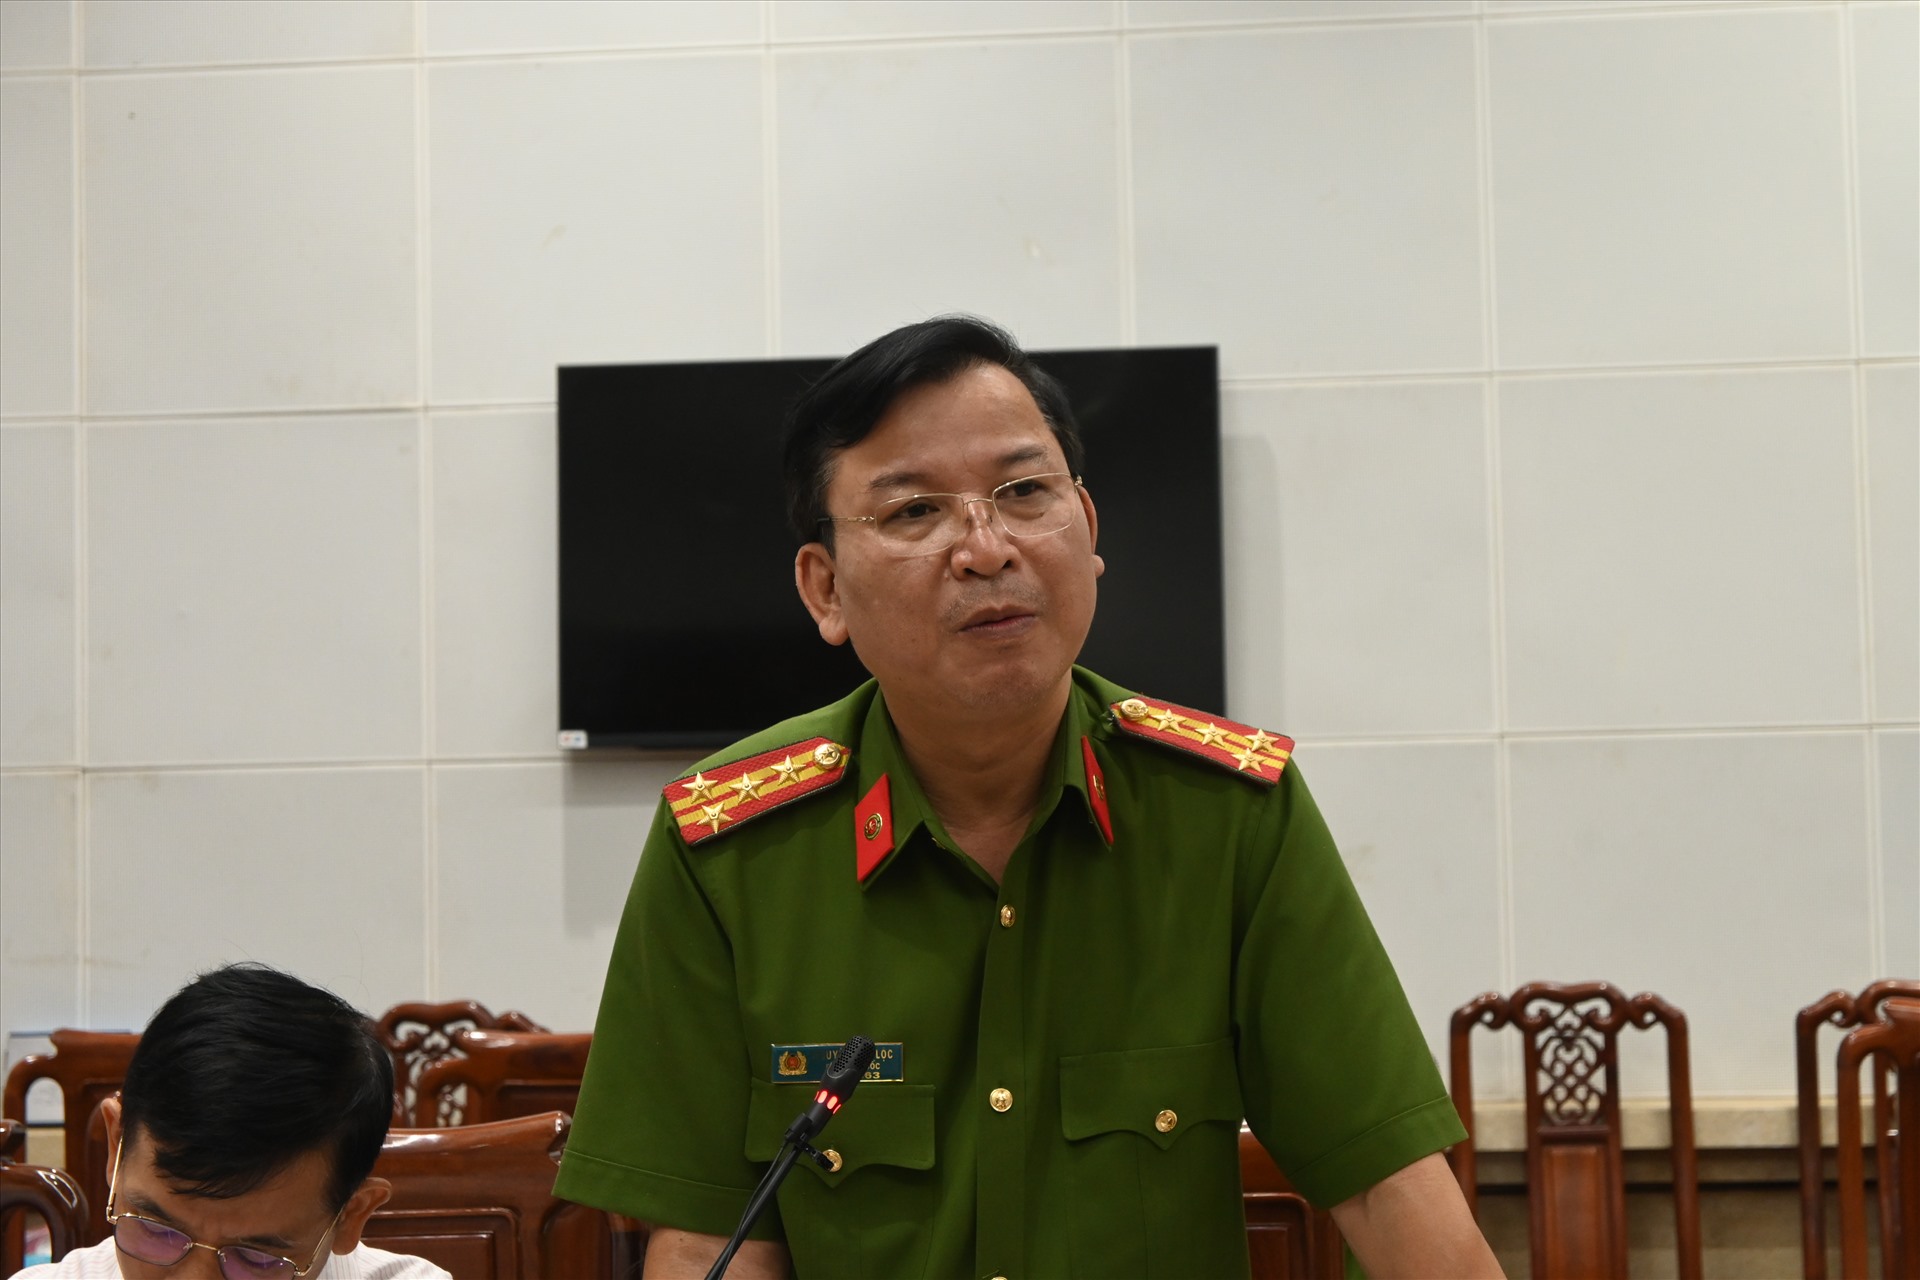 Đại tá Nguyễn Văn Lộc - Phó Giám đốc Công an tỉnh Tiền Giang - phát biểu tại buổi họp báo. Ảnh: Thành Nhân